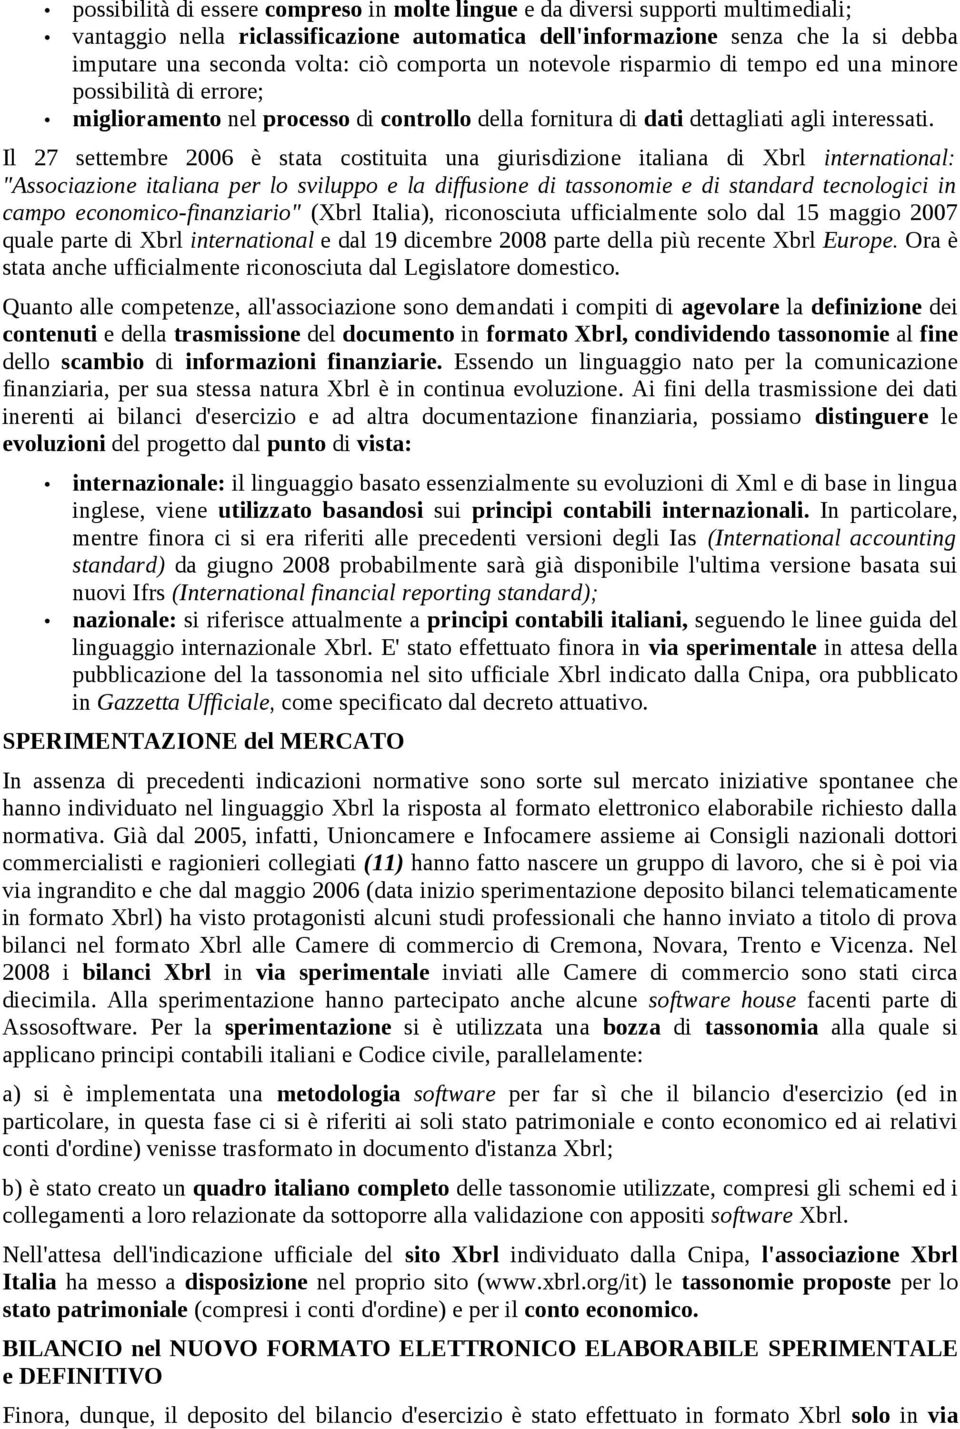 Il 27 settembre 2006 è stata costituita una giurisdizione italiana di Xbrl international: "Associazione italiana per lo sviluppo e la diffusione di tassonomie e di standard tecnologici in campo